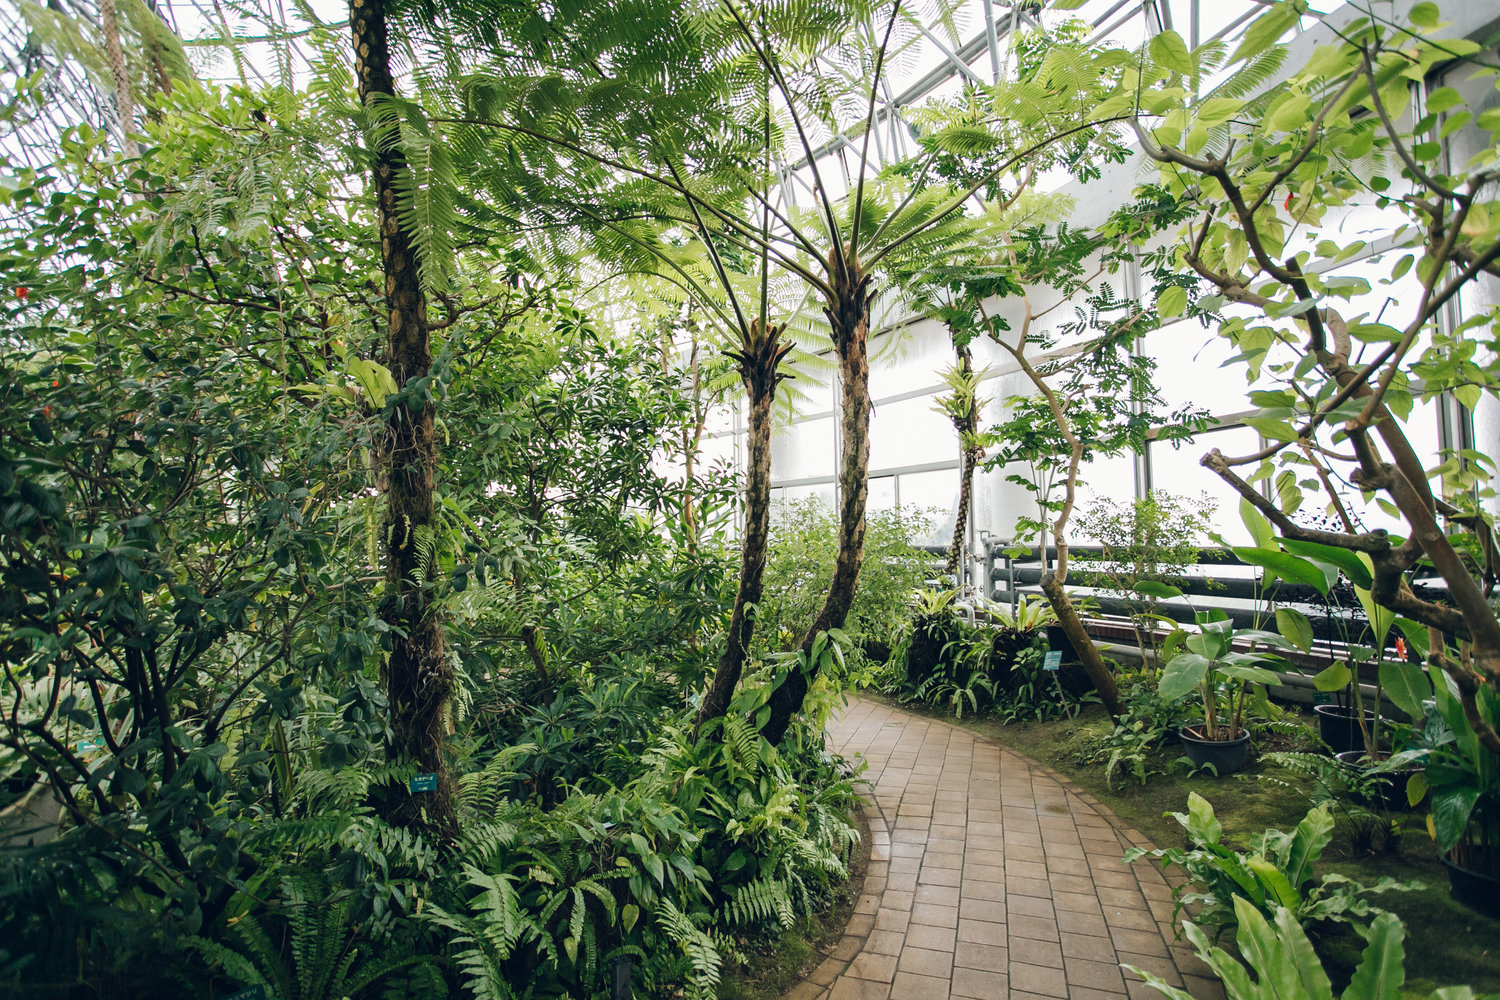 廣田恵介 Take A Tour Inside The Tropical Greenhouse Of Yumenoshima In Tokyo Japan Nbsp T Co H4m53gtmps 東京都江東区 夢の島熱帯植物館 T Co N5otdatvsj Twitter